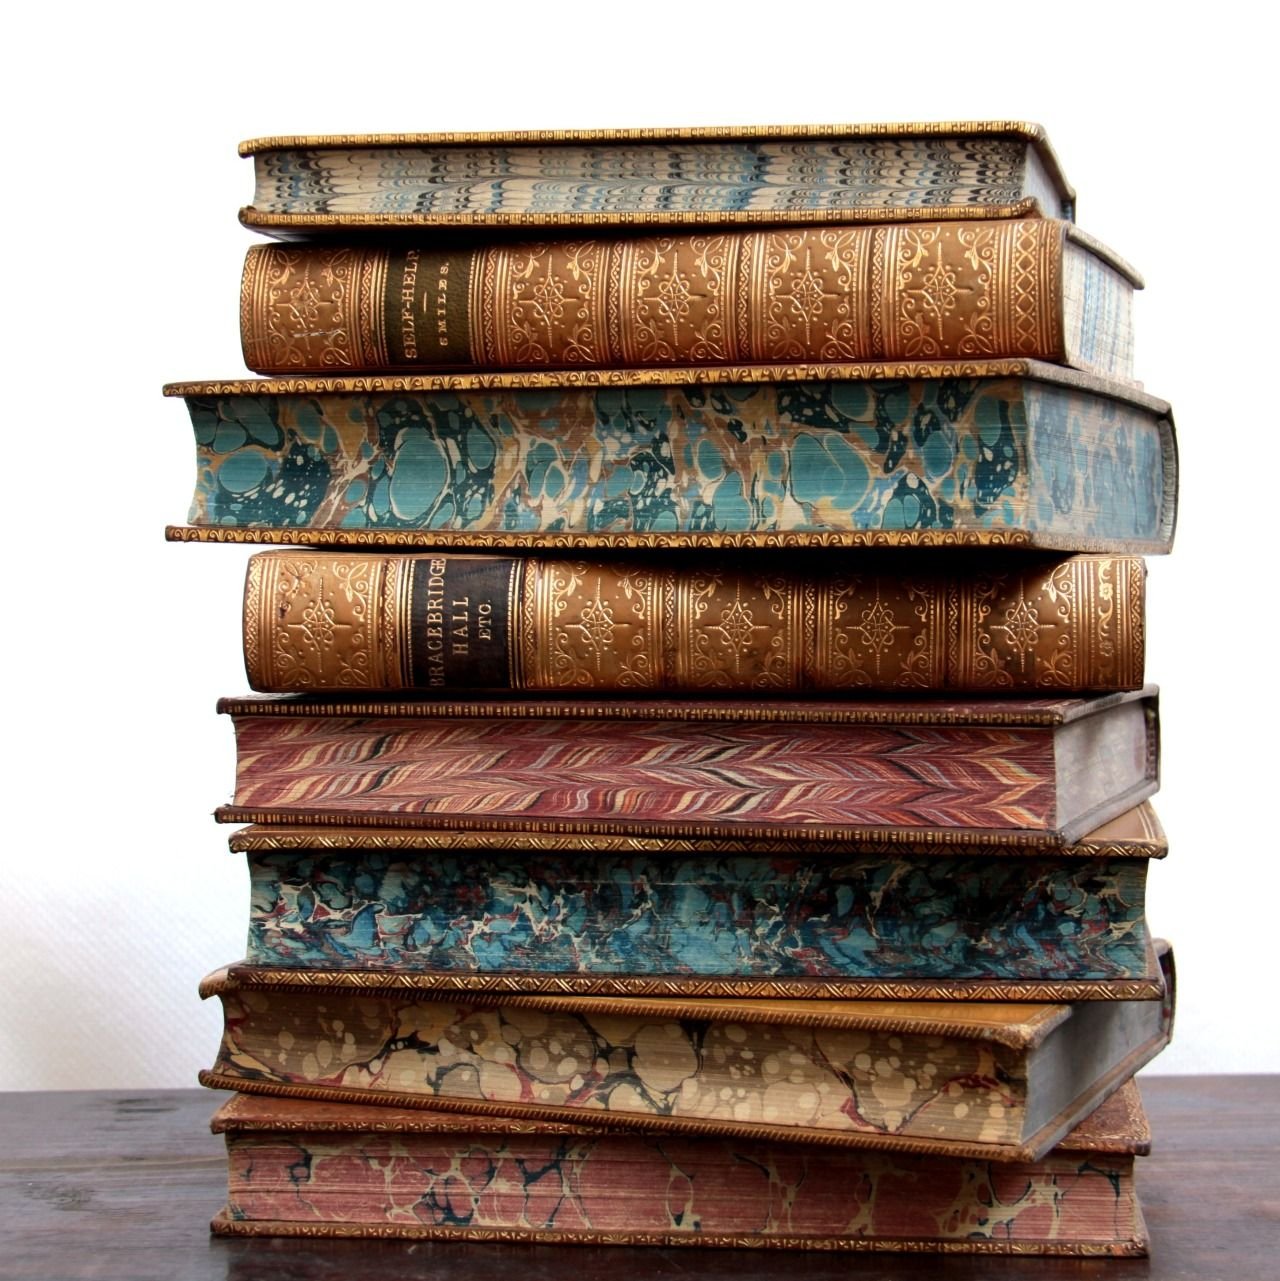 Worn book. Стопка книг. Стопка старинных книг. Полки для книг. Красивая стопка книг.